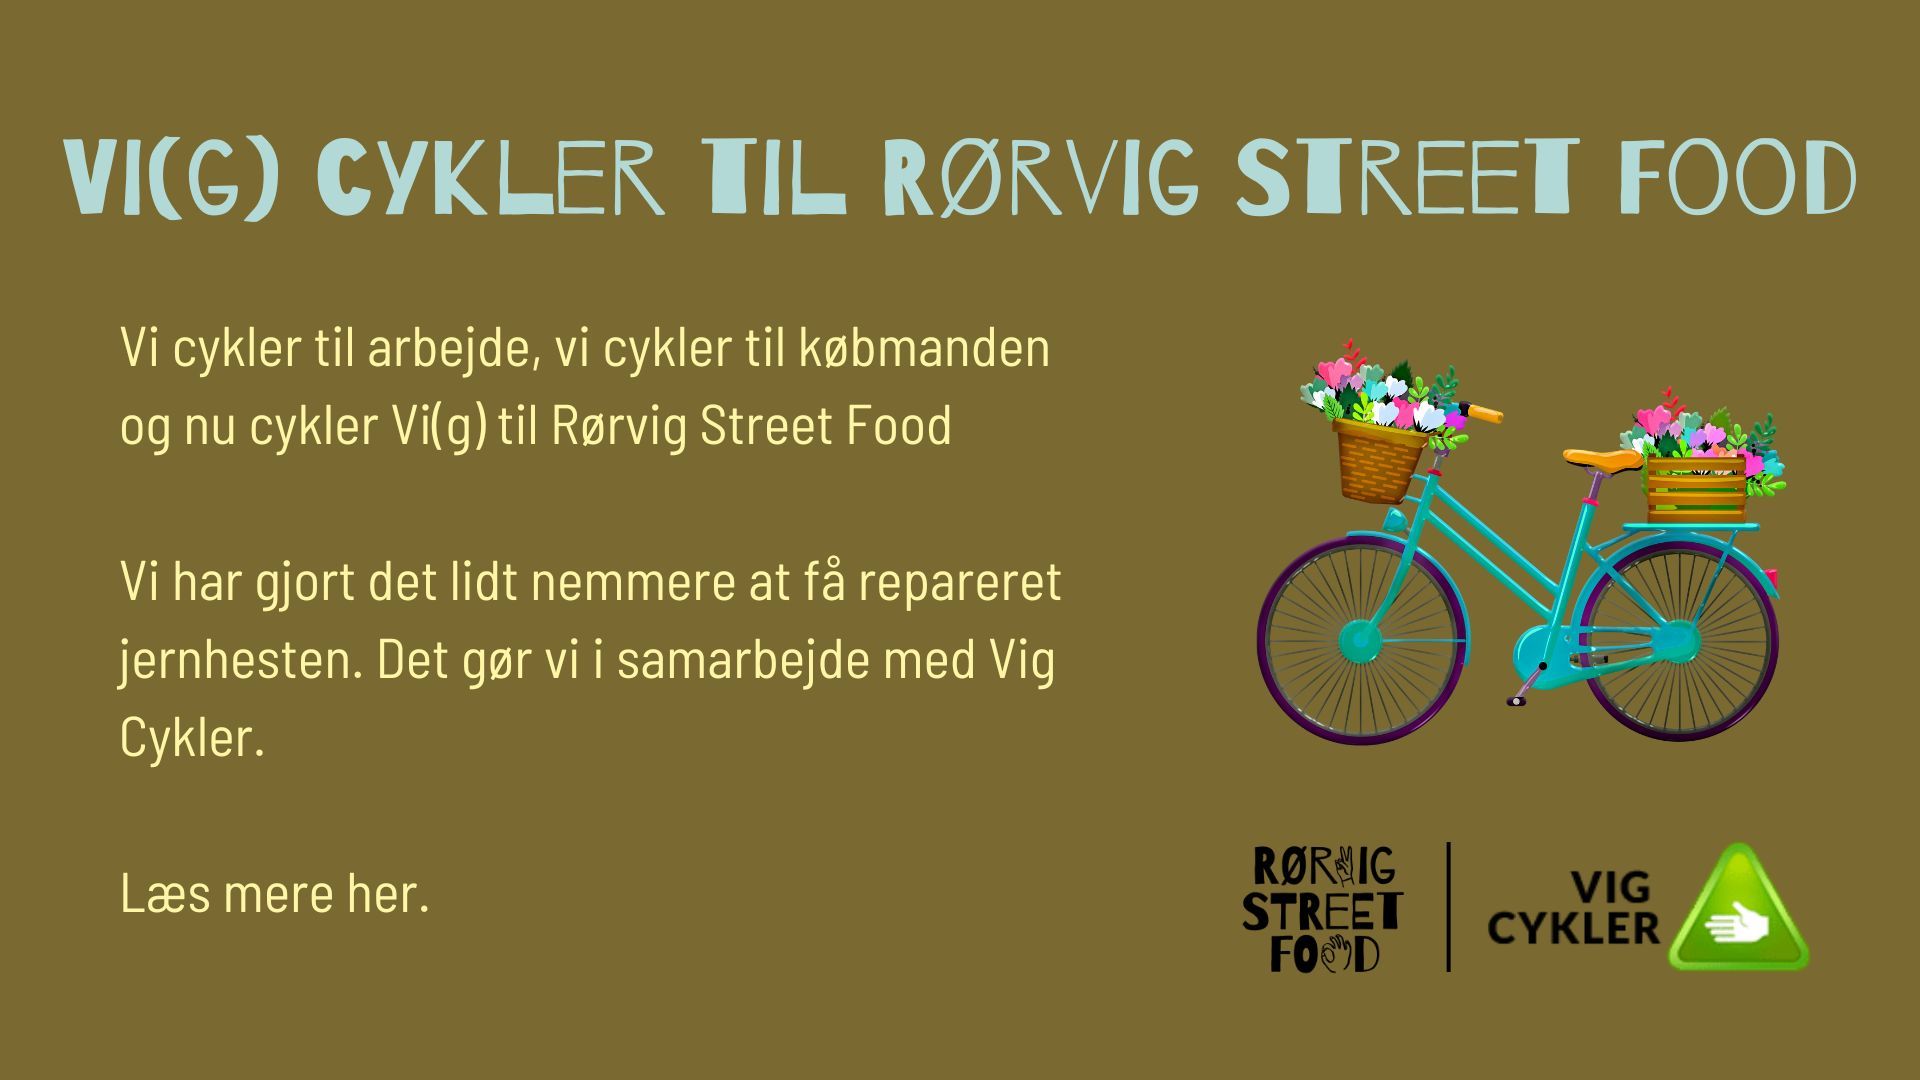 Vig Cykler til Rørvig Street Food